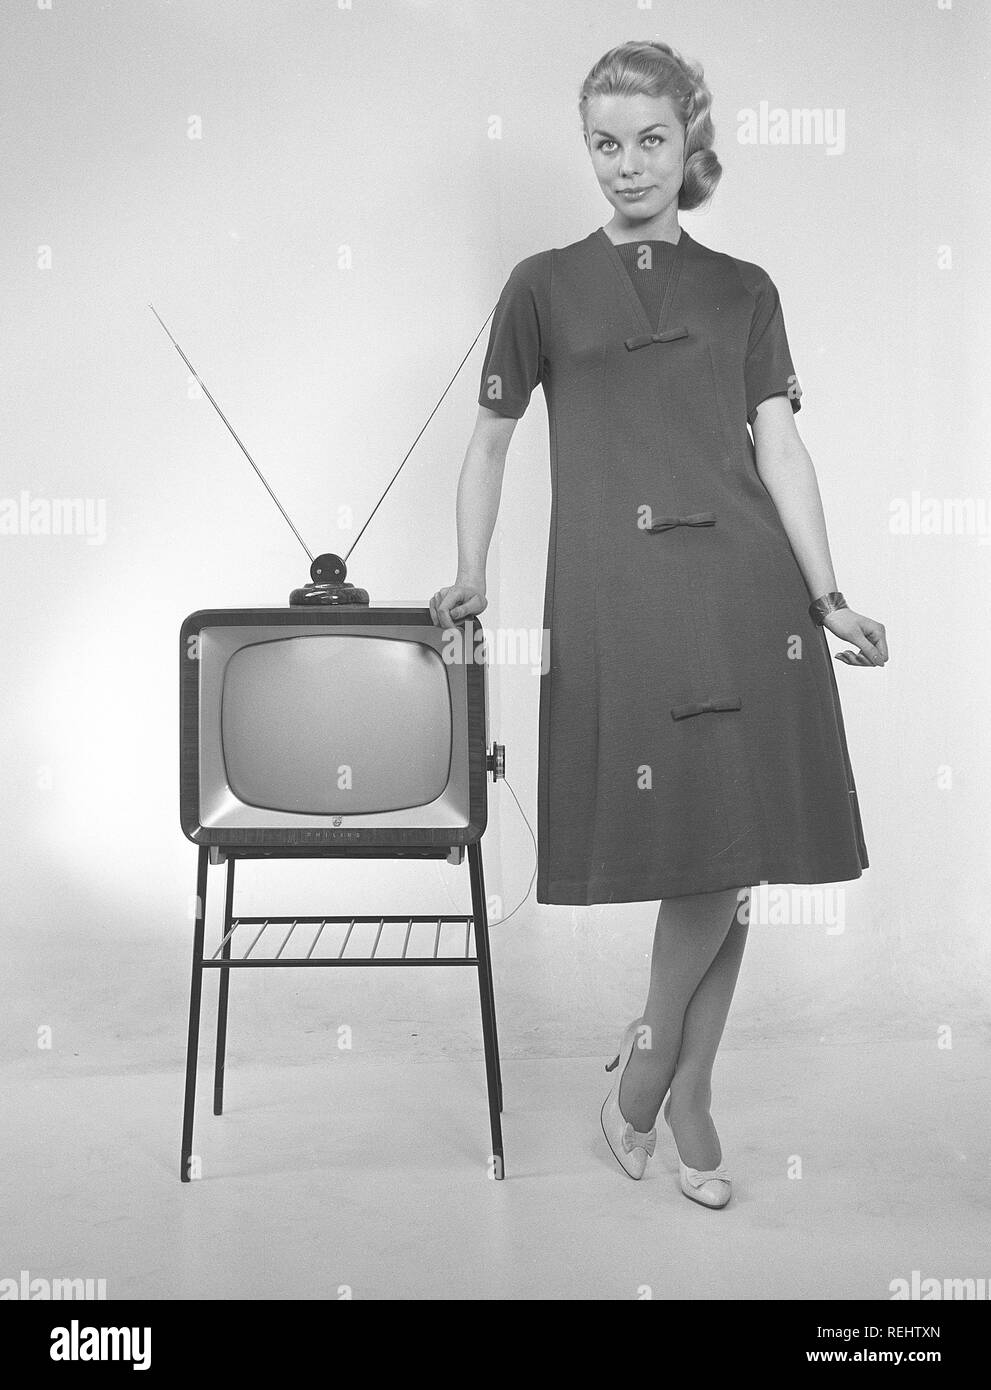 Fernsehen in den 1950er Jahren. Eine junge Frau steht in einer typischen  50er Kleid neben einem Fernseher mit einer Tabelle Antenne oben auf er Satz  gekleidet. 1952 1,4 Millionen Haushalte in Großbritannien